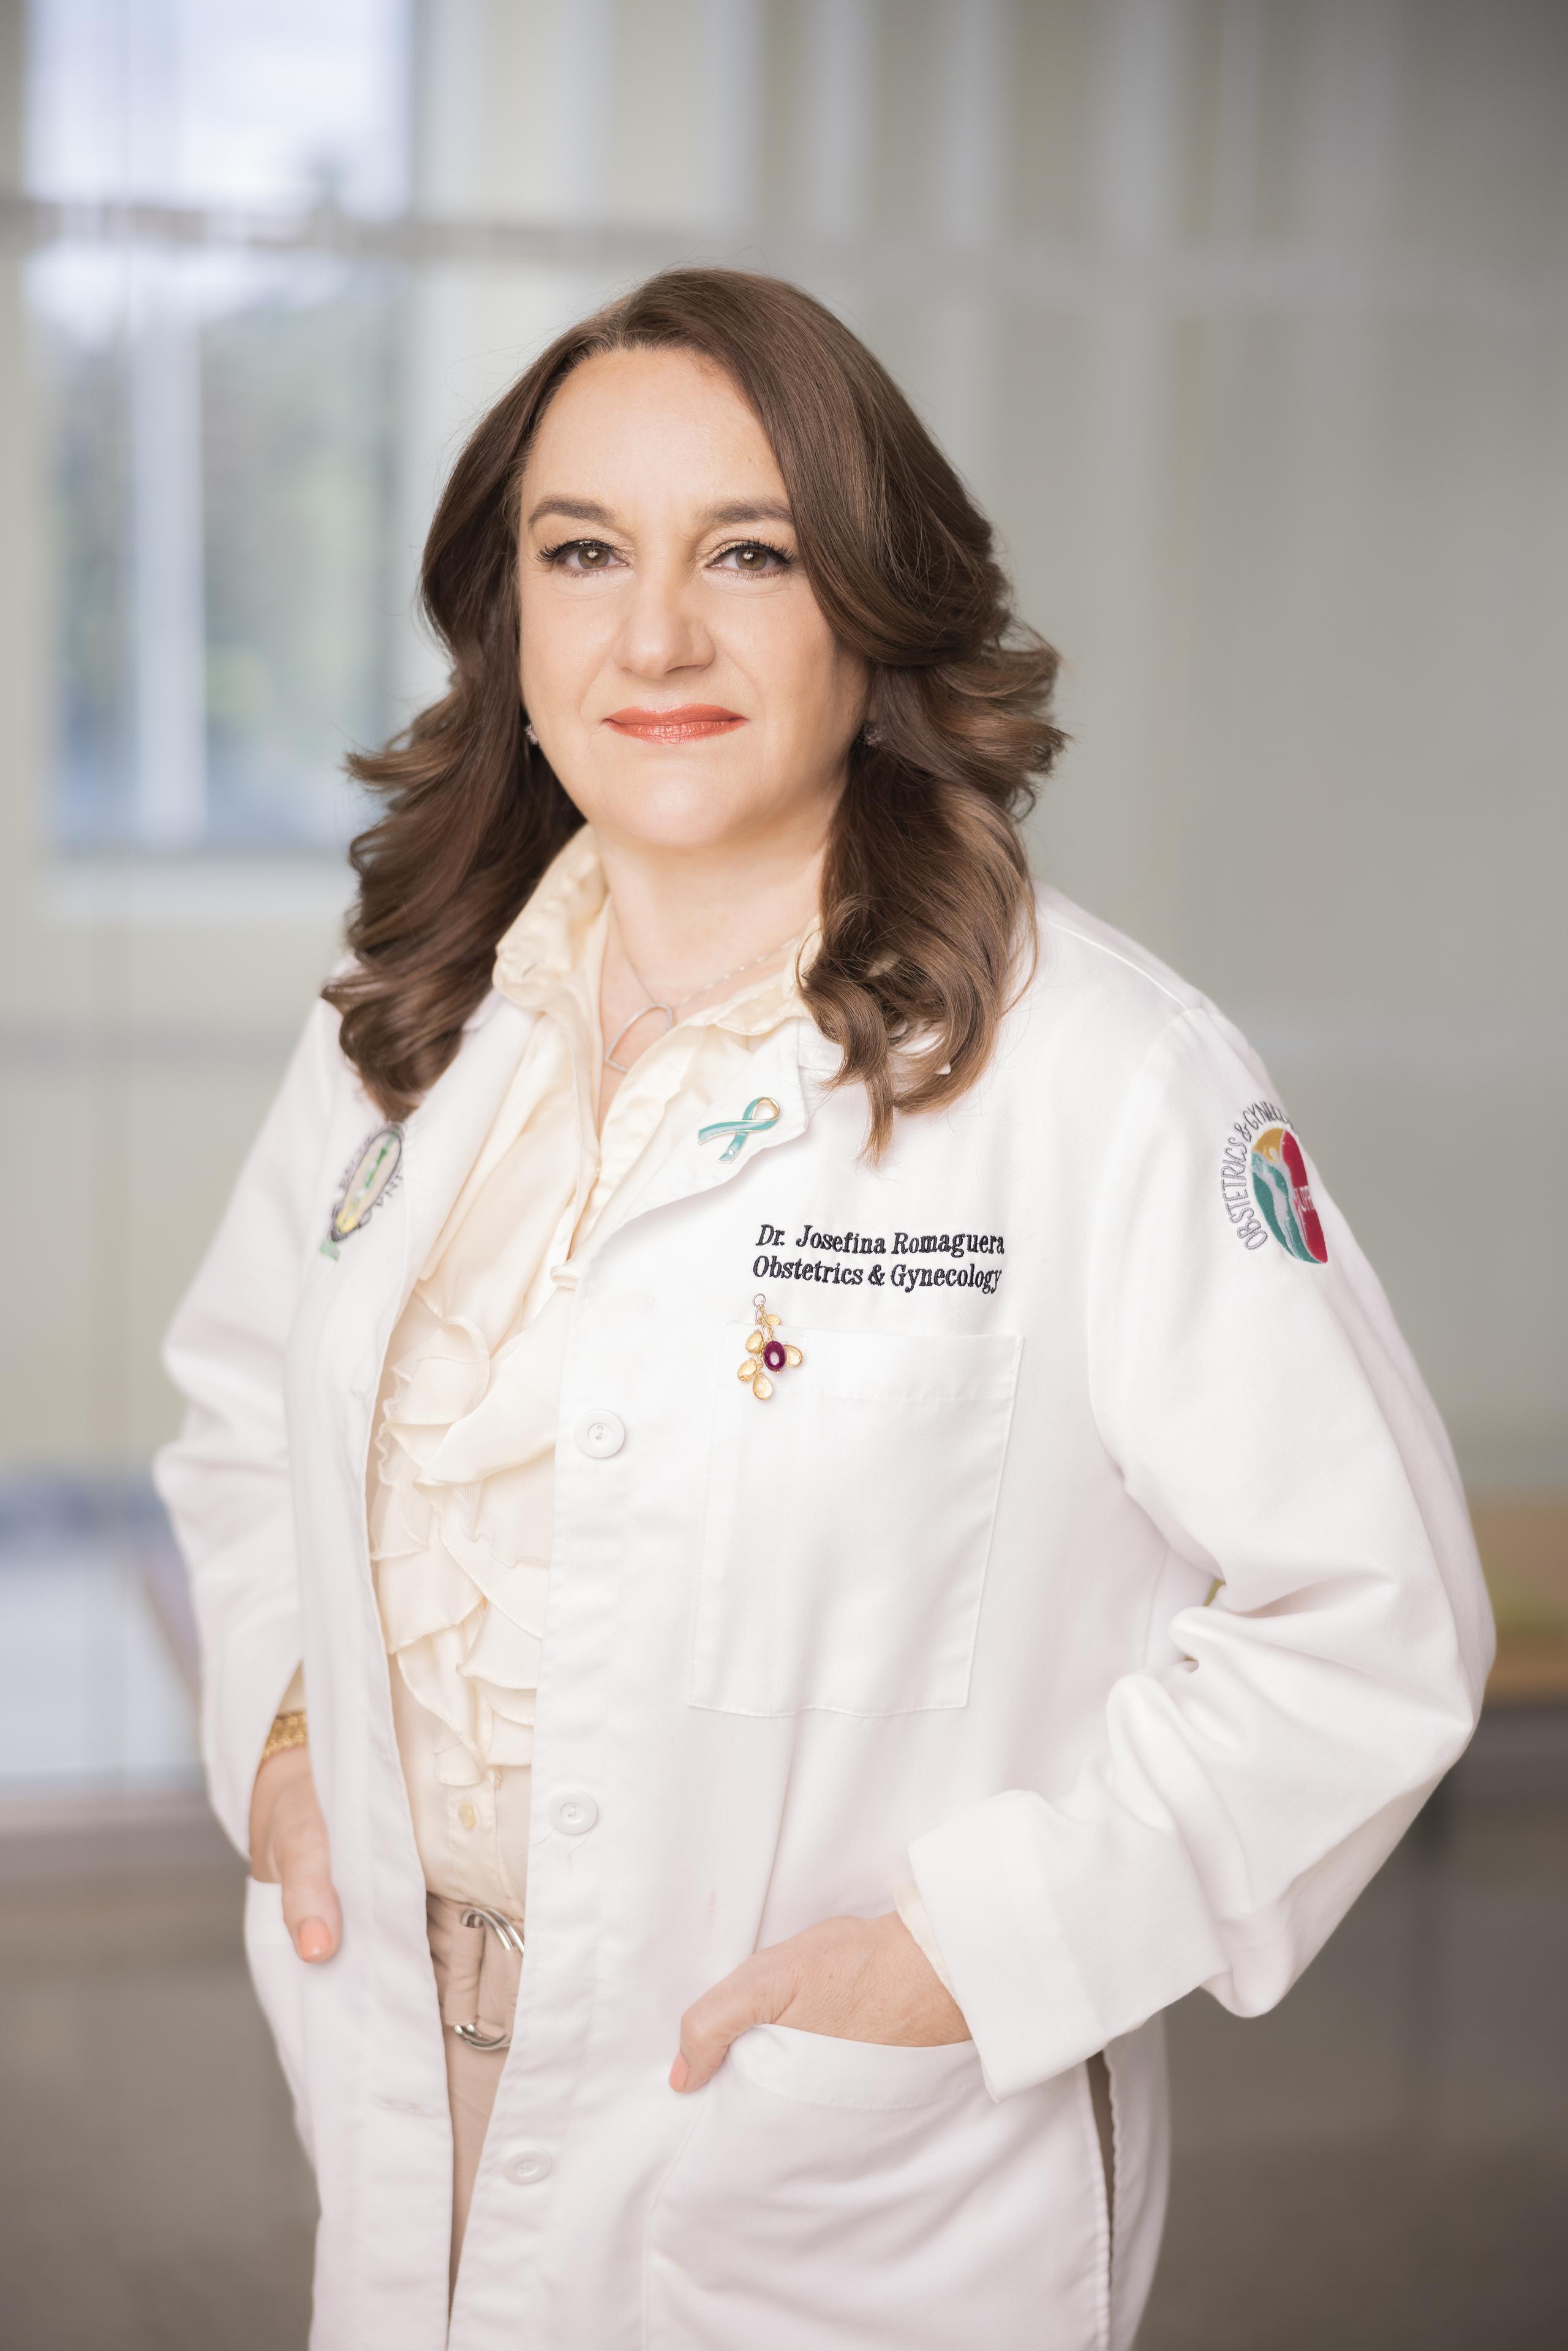 Josefina Romaguera, MD, MPH, es catedrática de Obstetricia y Ginecología del Recinto de Ciencias Médicas de la Universidad de Puerto Rico.